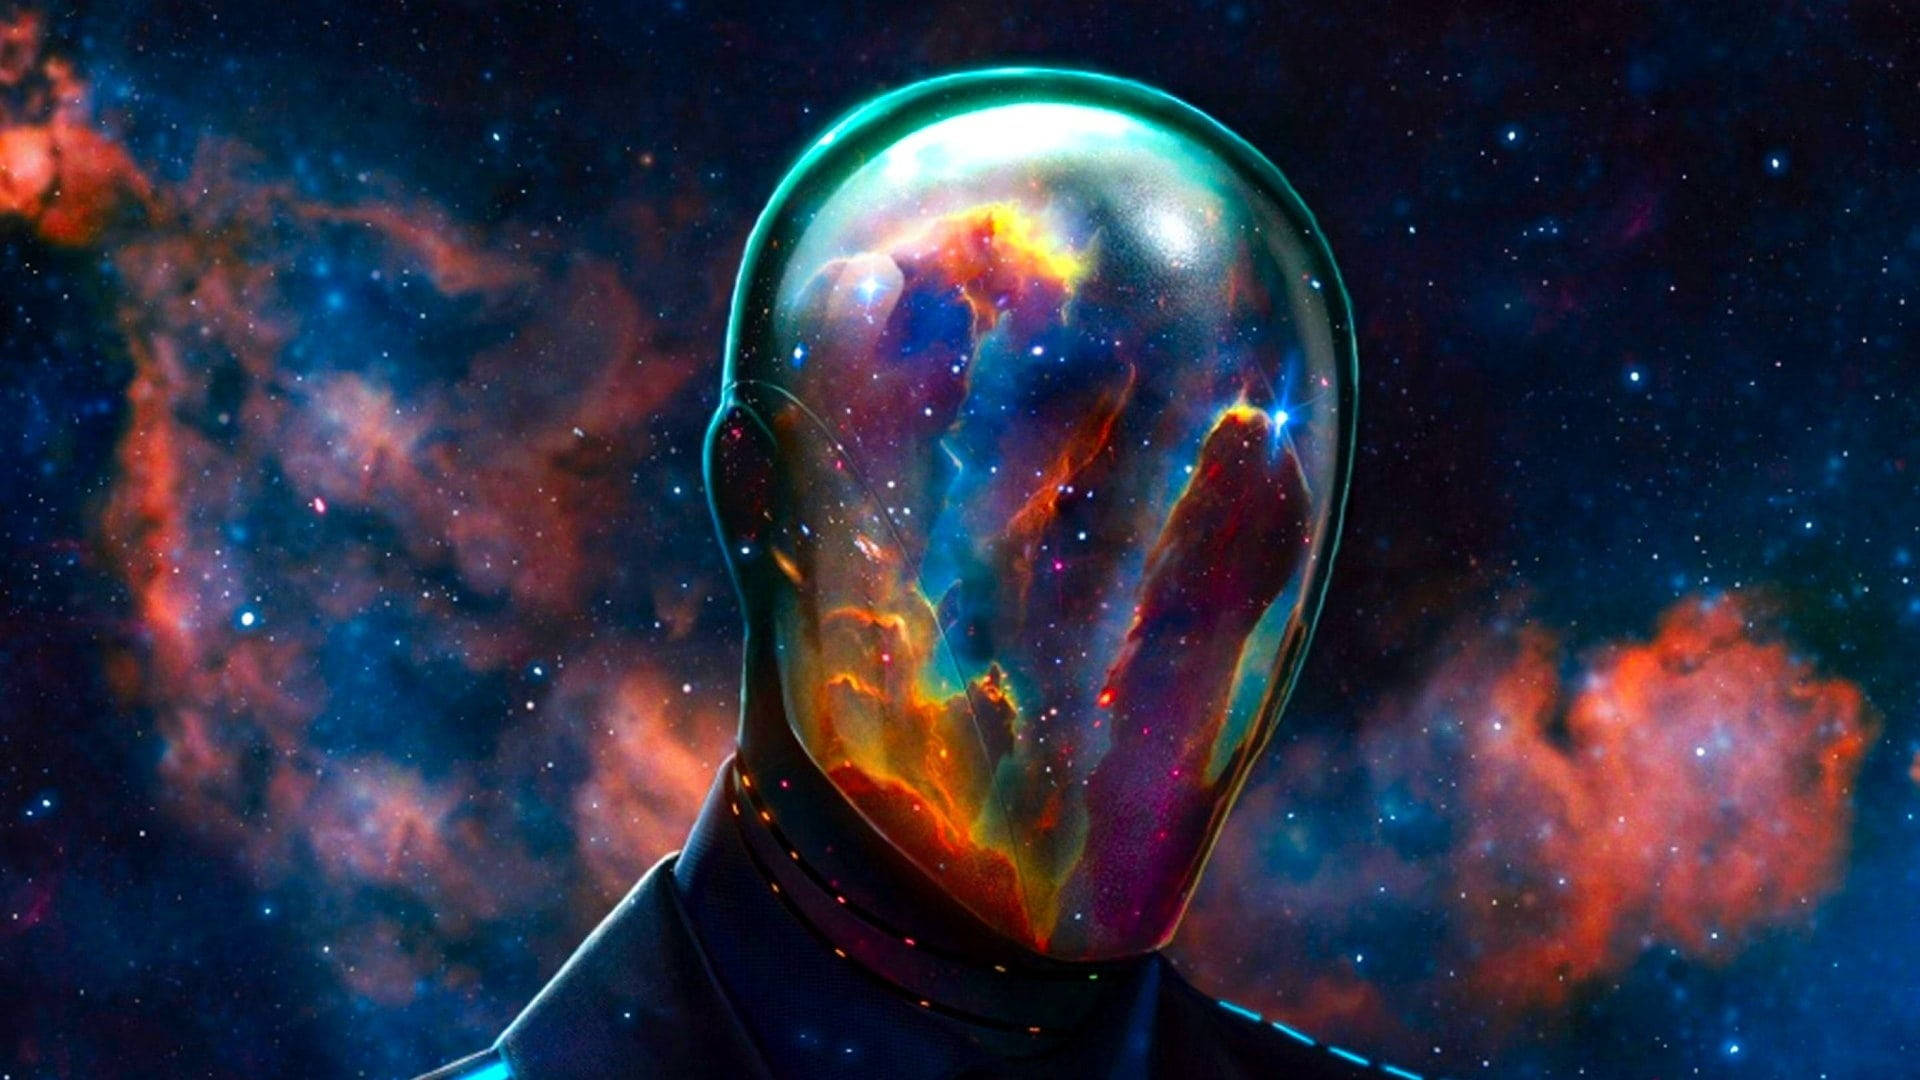 Nebula-Like Mind For Desktop Background Wallpaper